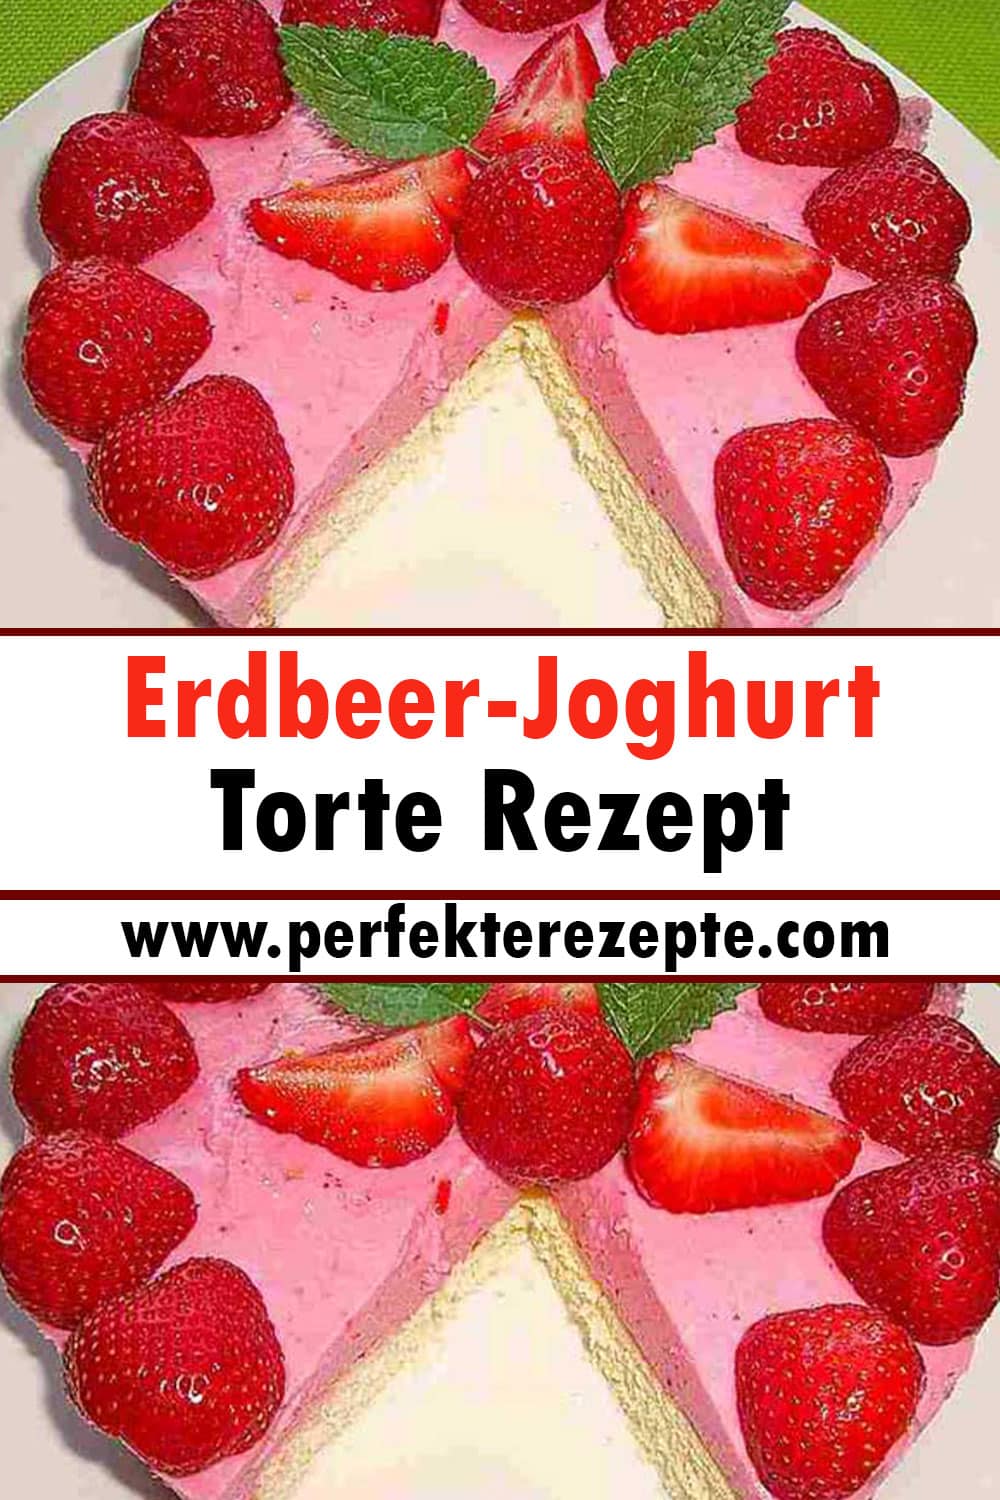 Erdbeer-Joghurt Torte Rezept